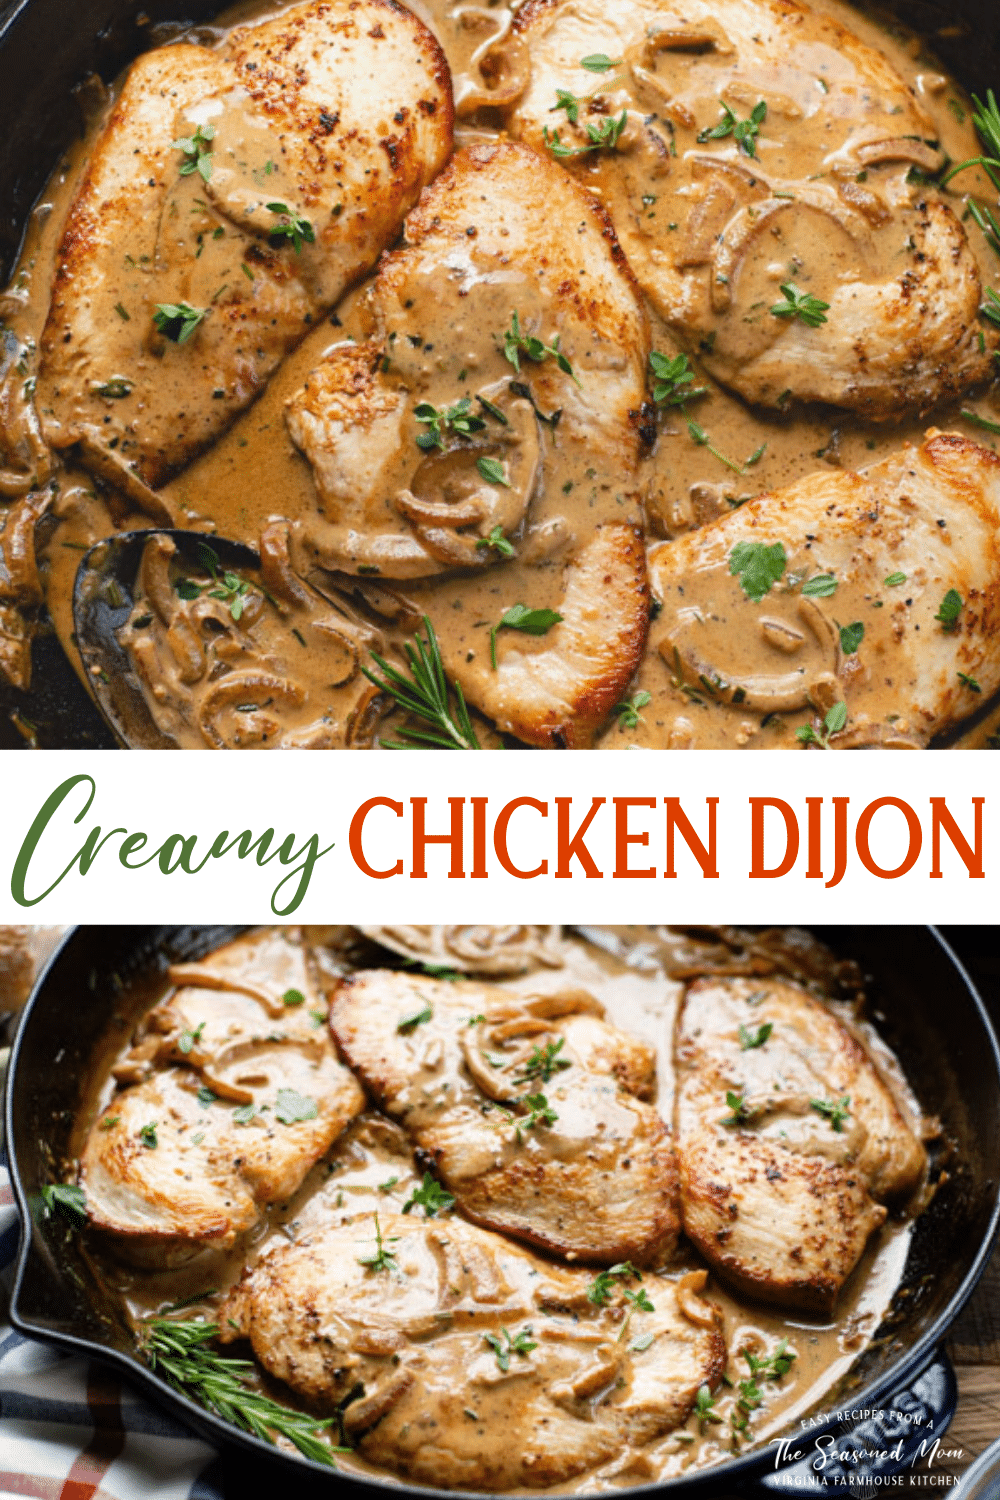 Chicken Dijon - The Seasoned Mom